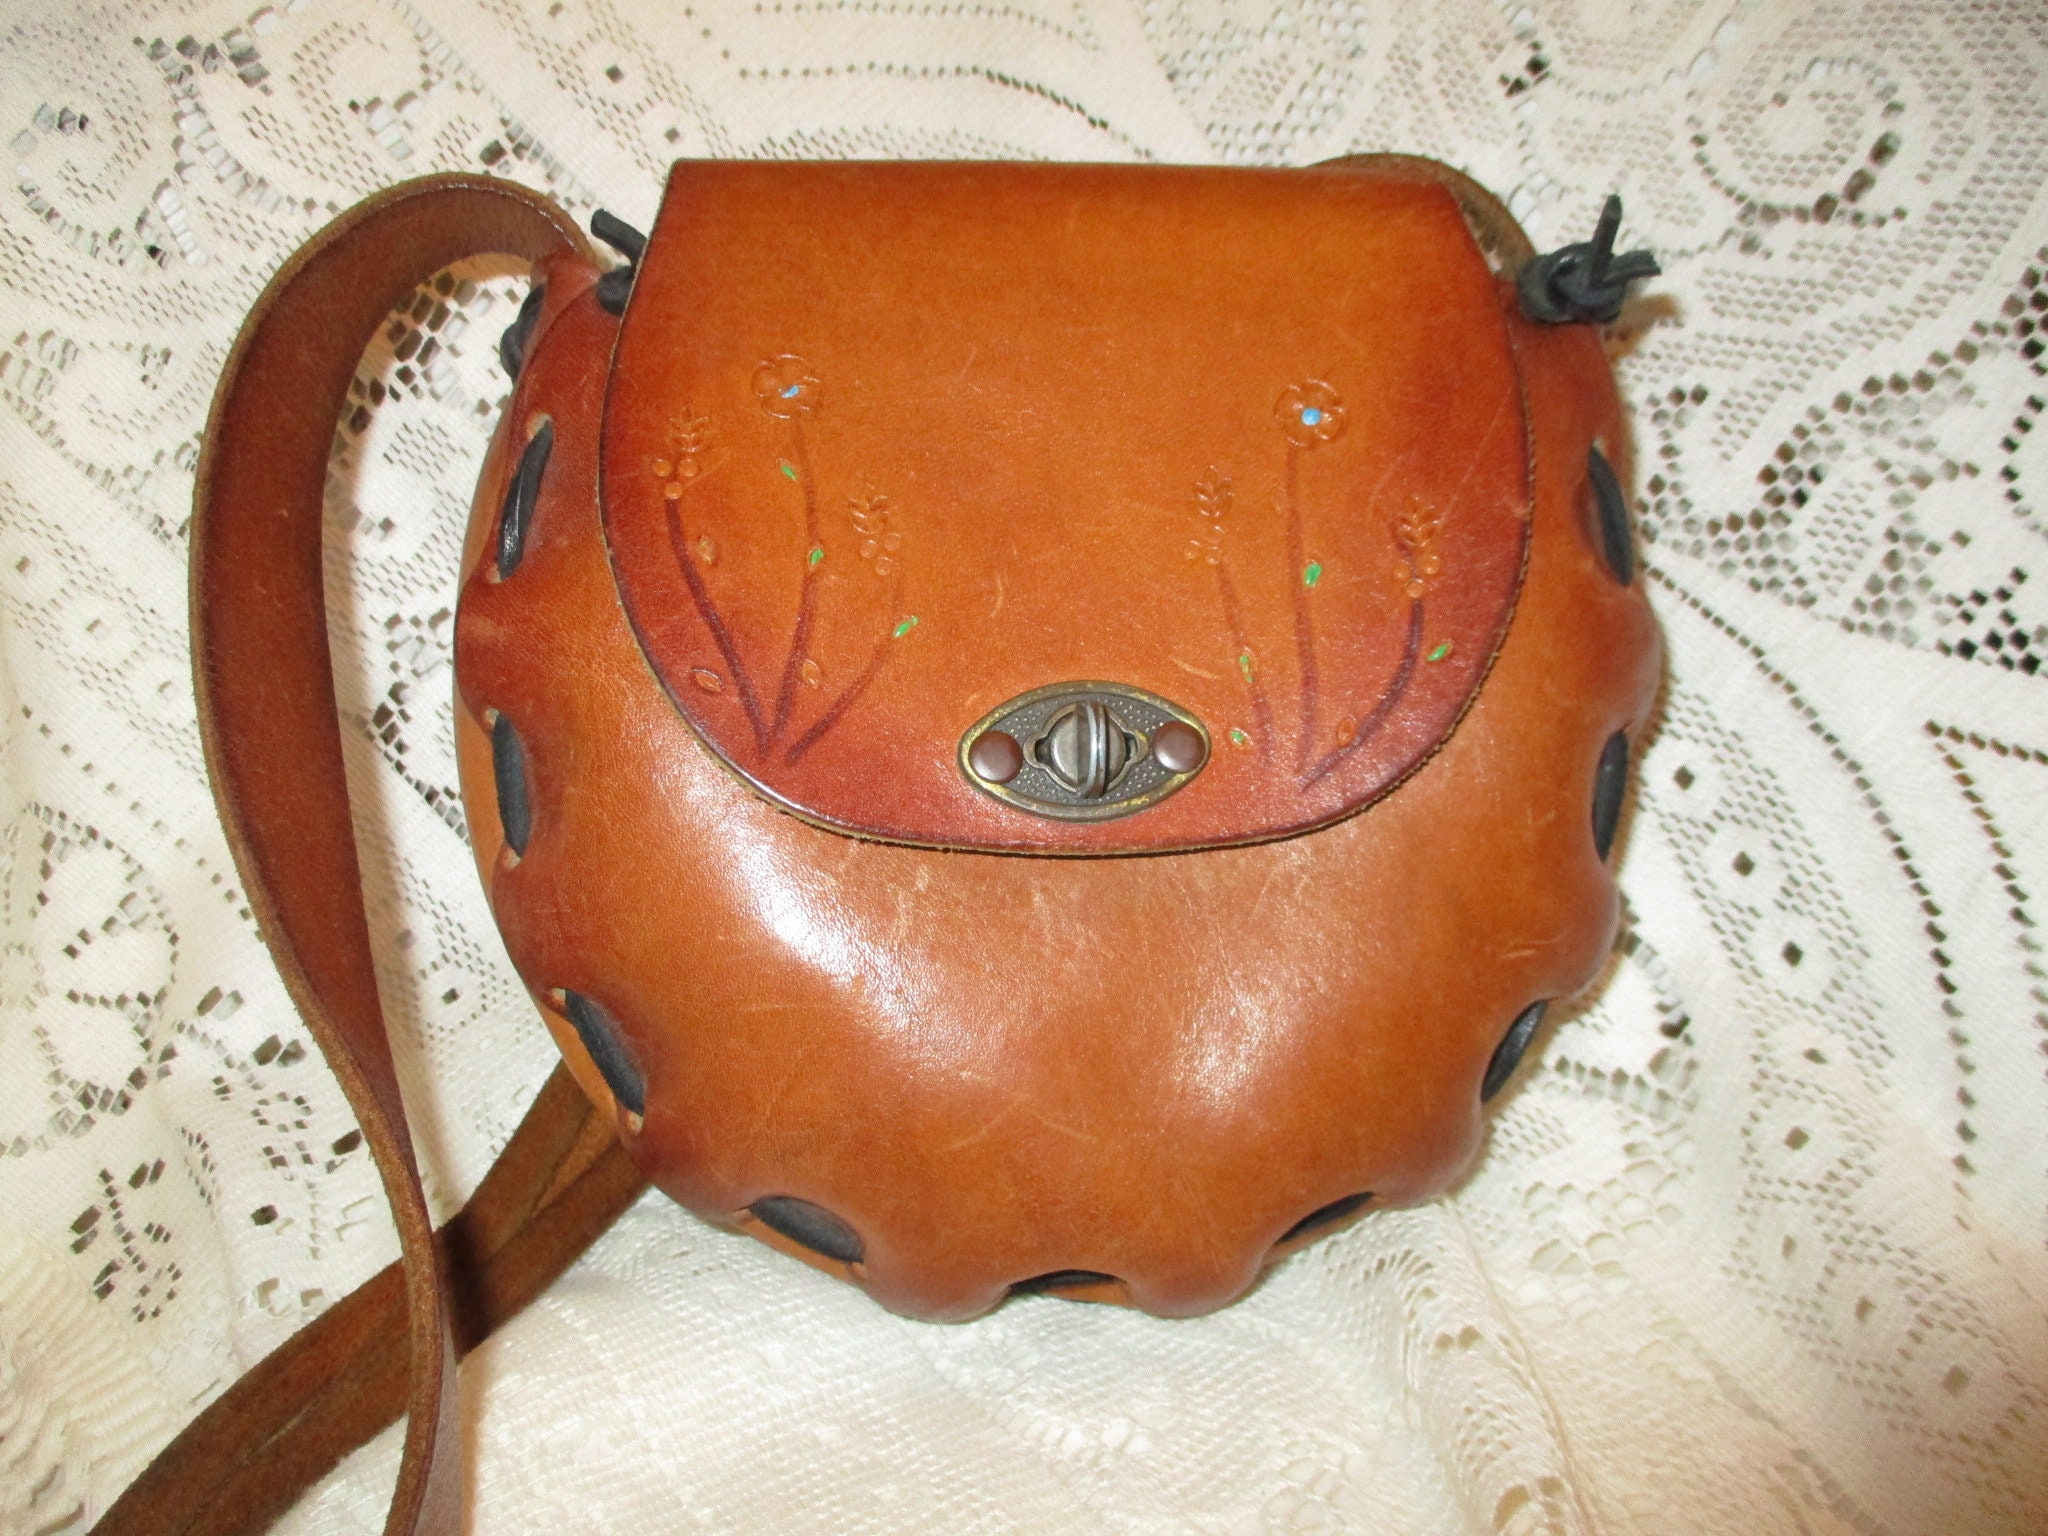 leather flap shoulder bag